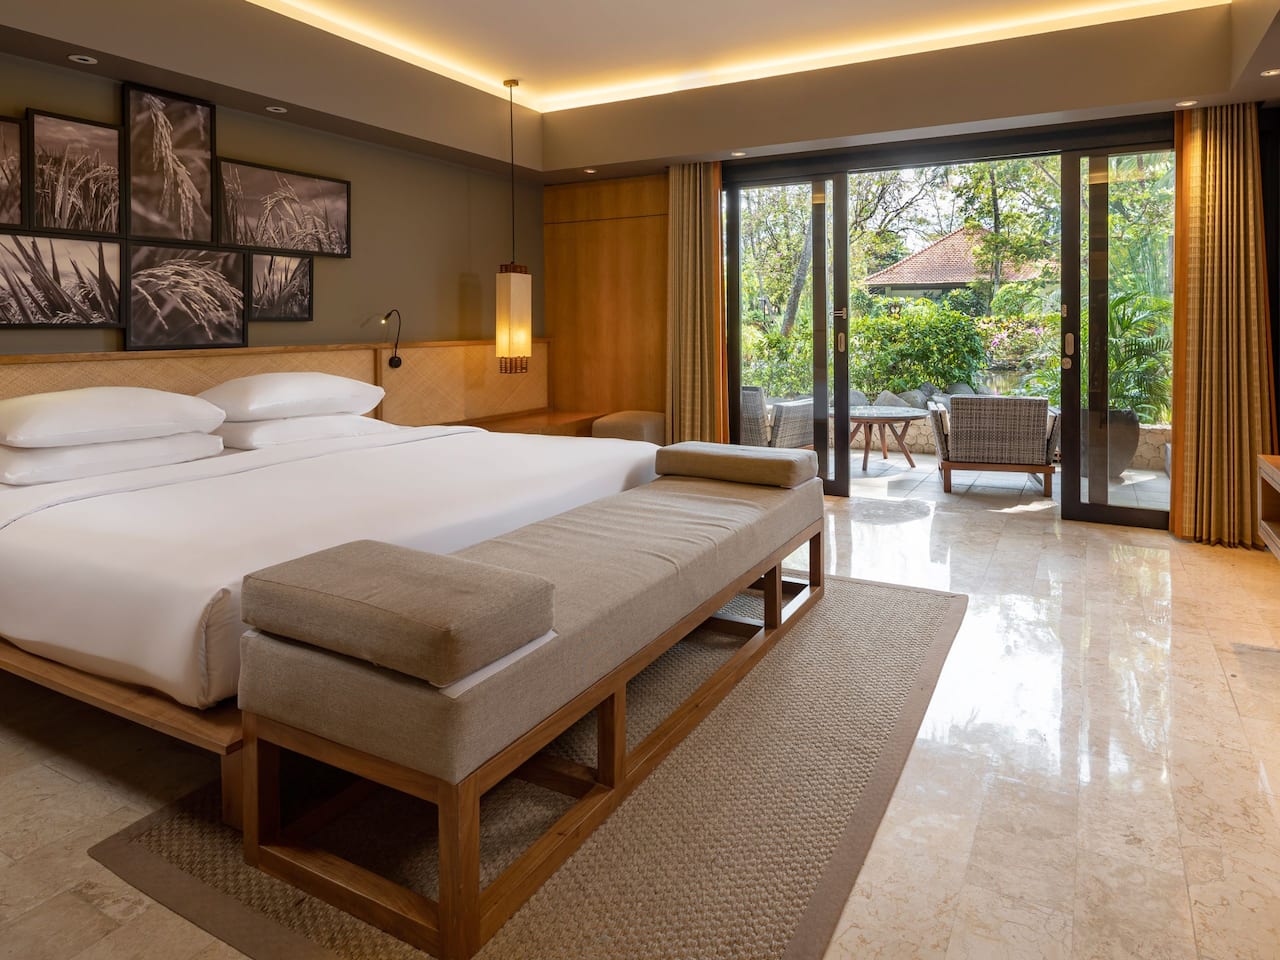 Grand Suite King at Grand Hyatt Bali Hotel